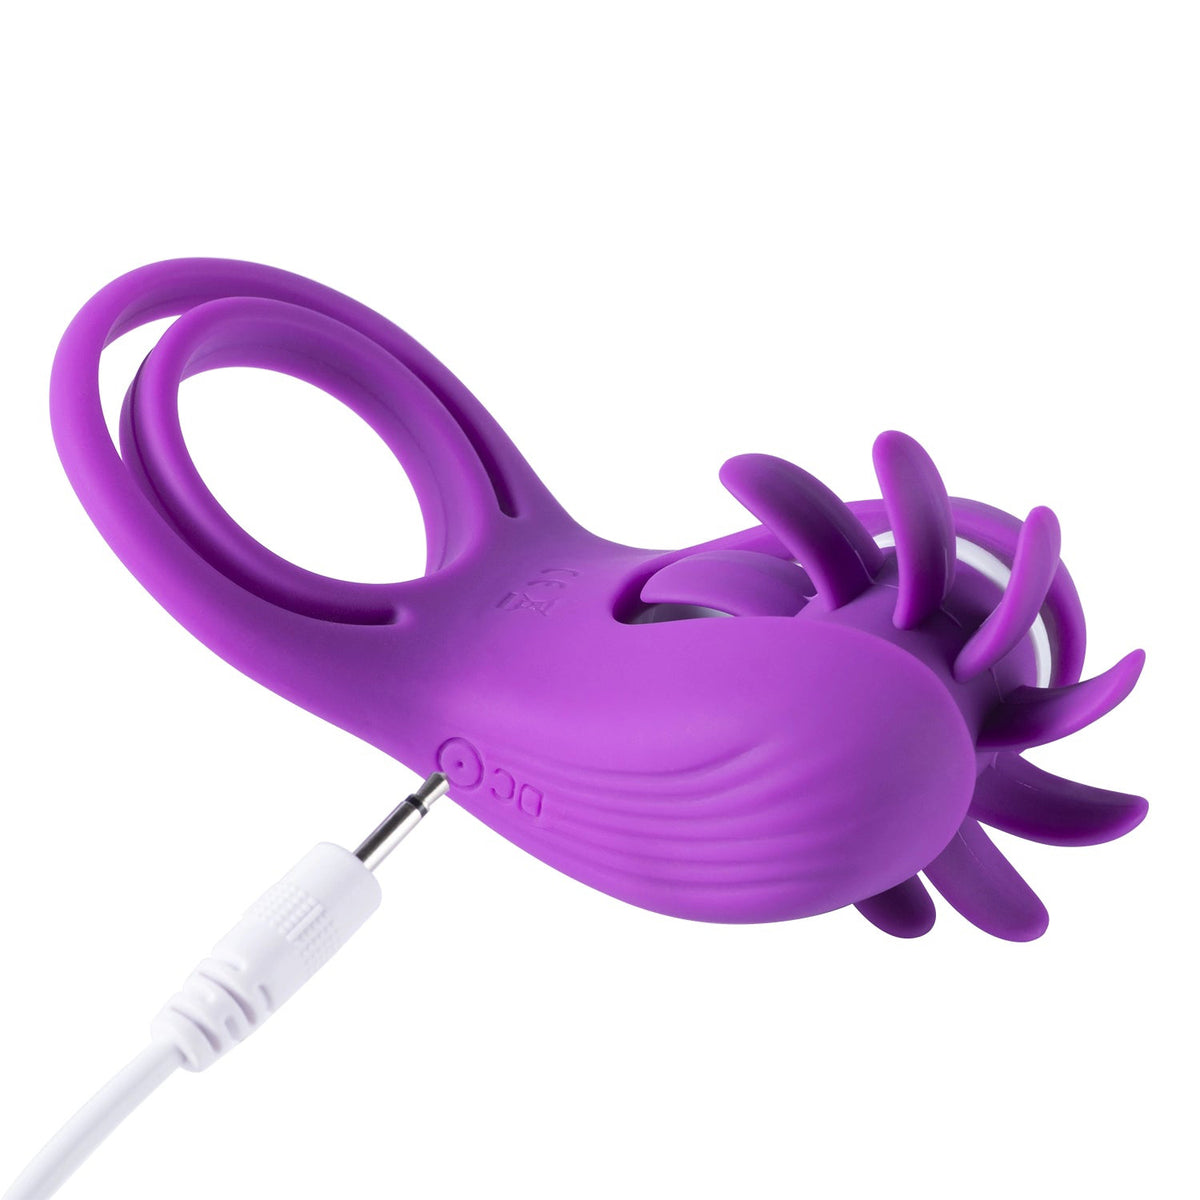 Roxy - Lamedor de clítoris de lengua y anillo para pene - Púrpura